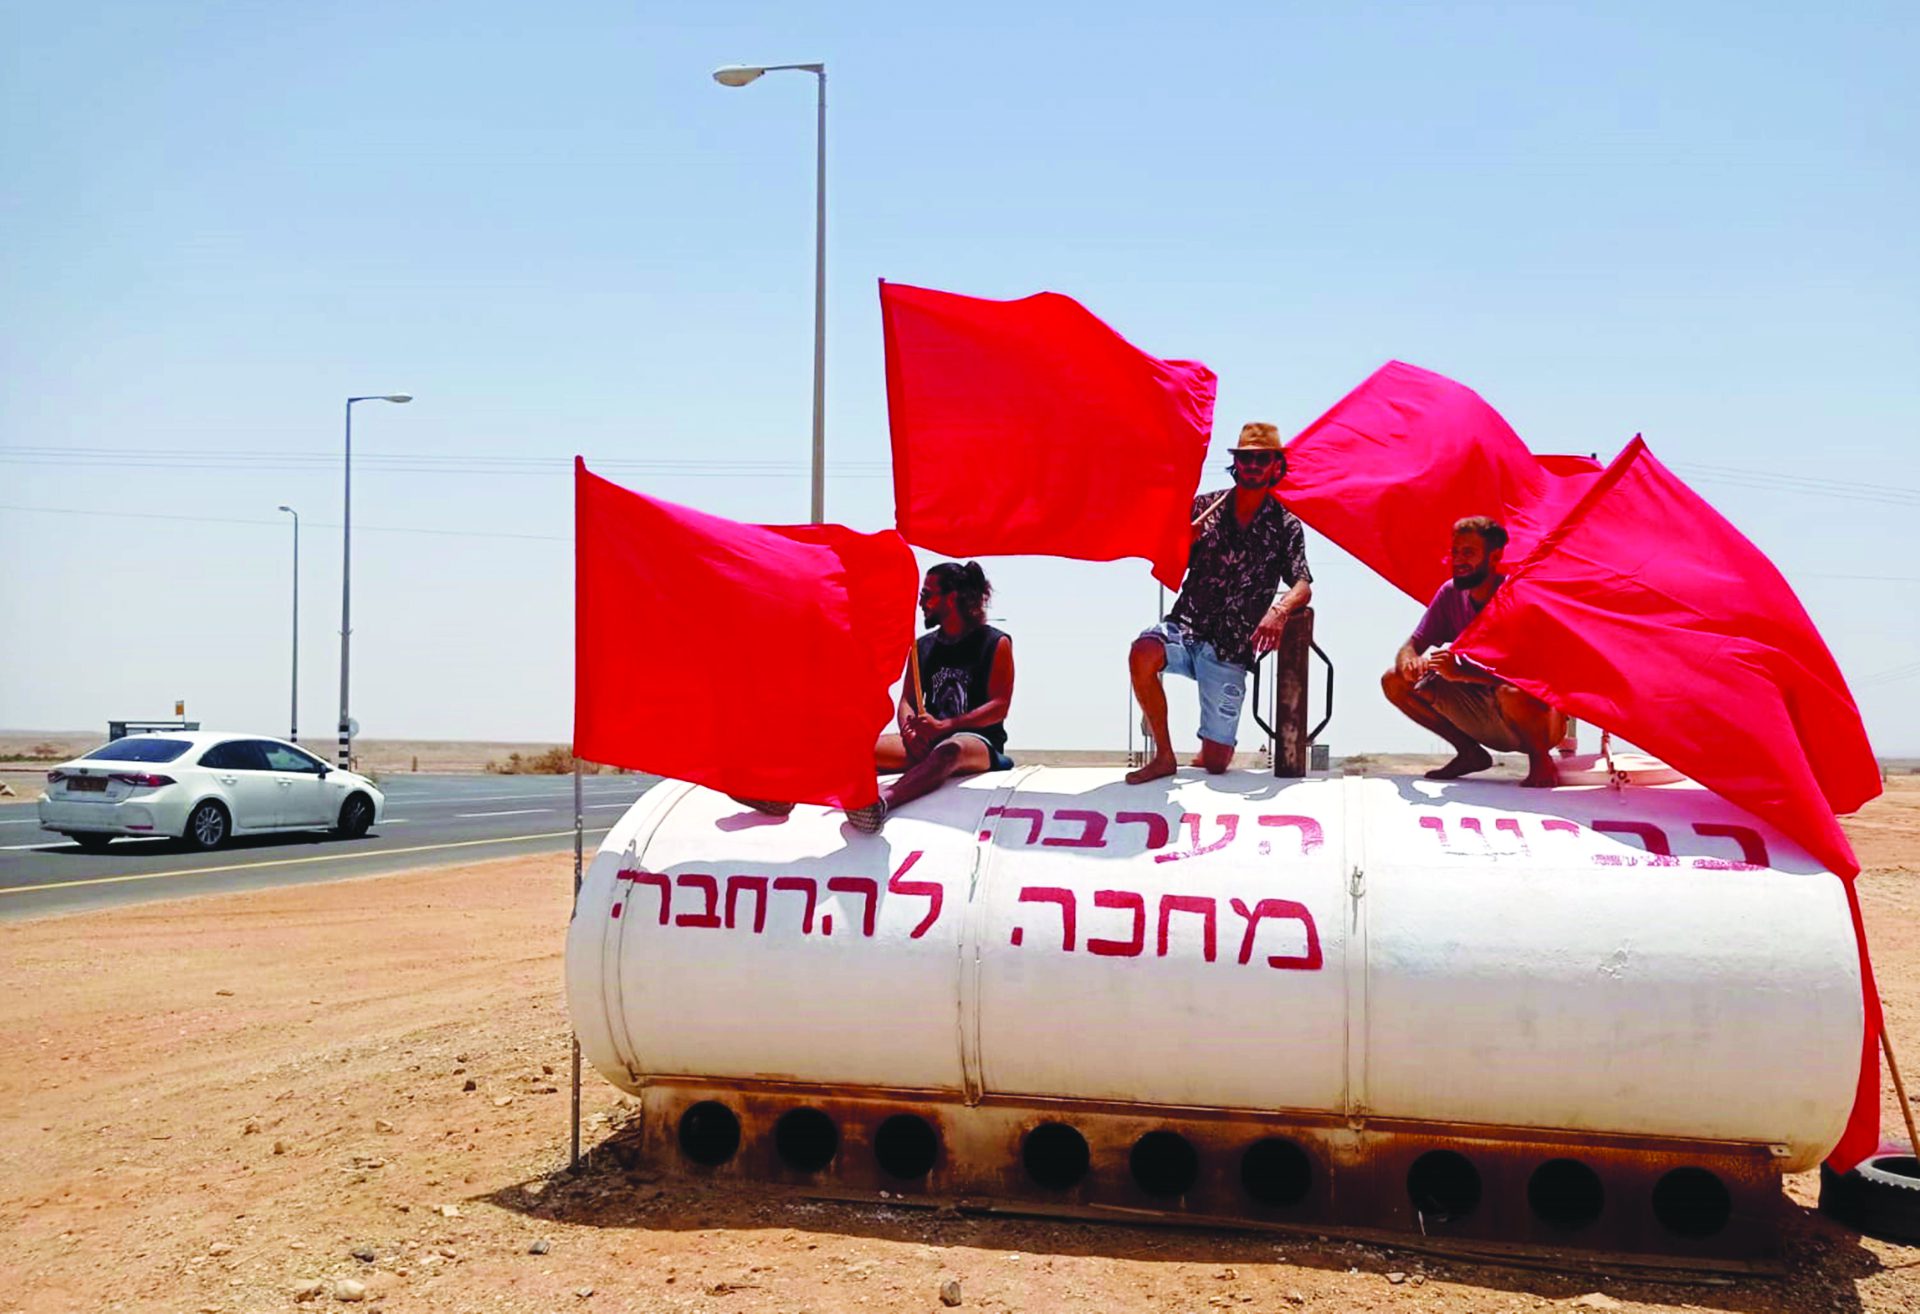 תושבי הערבה התיכונה הציבו דגלים אדומים לאורך כביש תשעים צילום עופר נווה 1